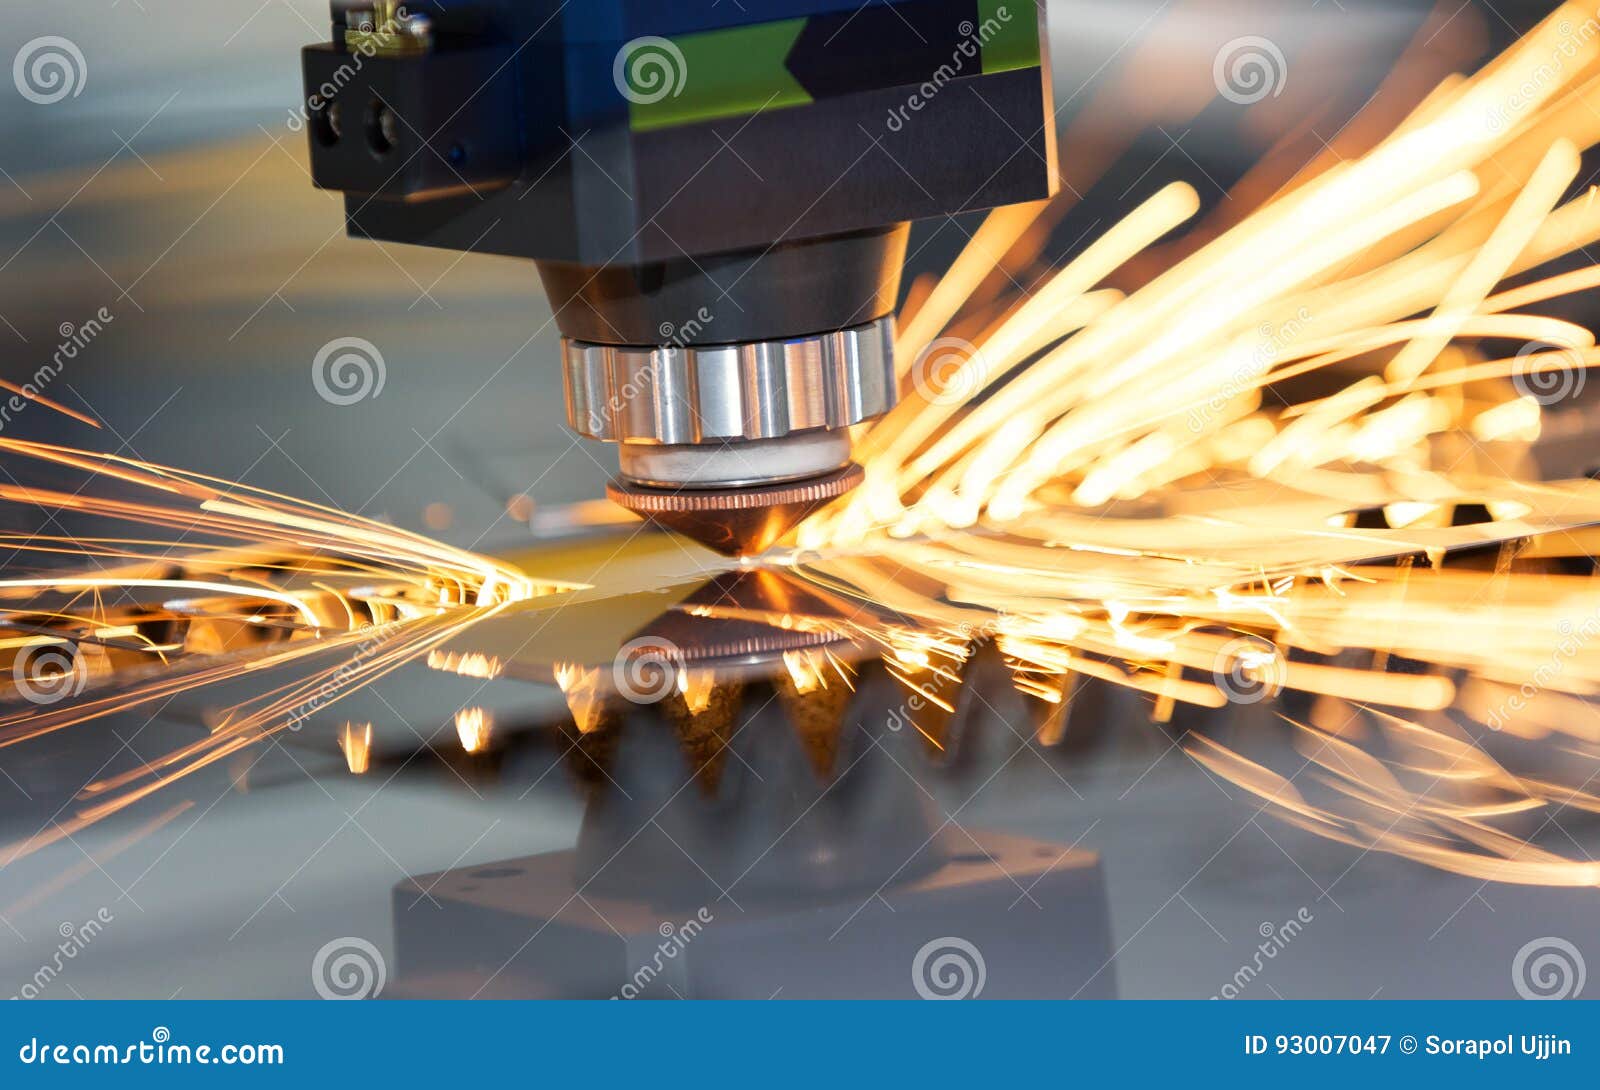 high precision cnc laser welding metal sheet